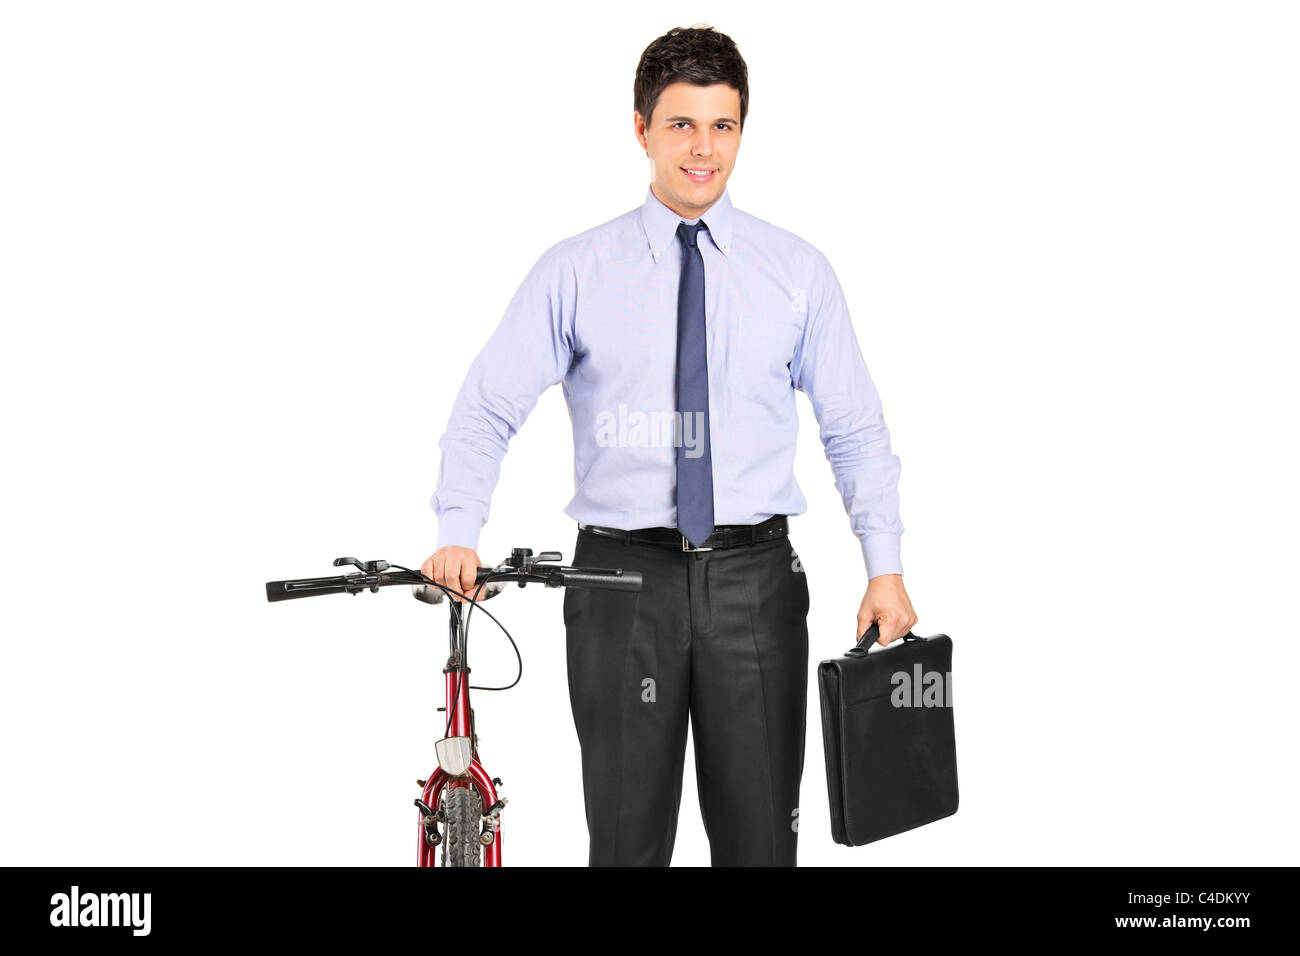 Ritratto di un giovane imprenditore in posa accanto a una bicicletta Foto Stock